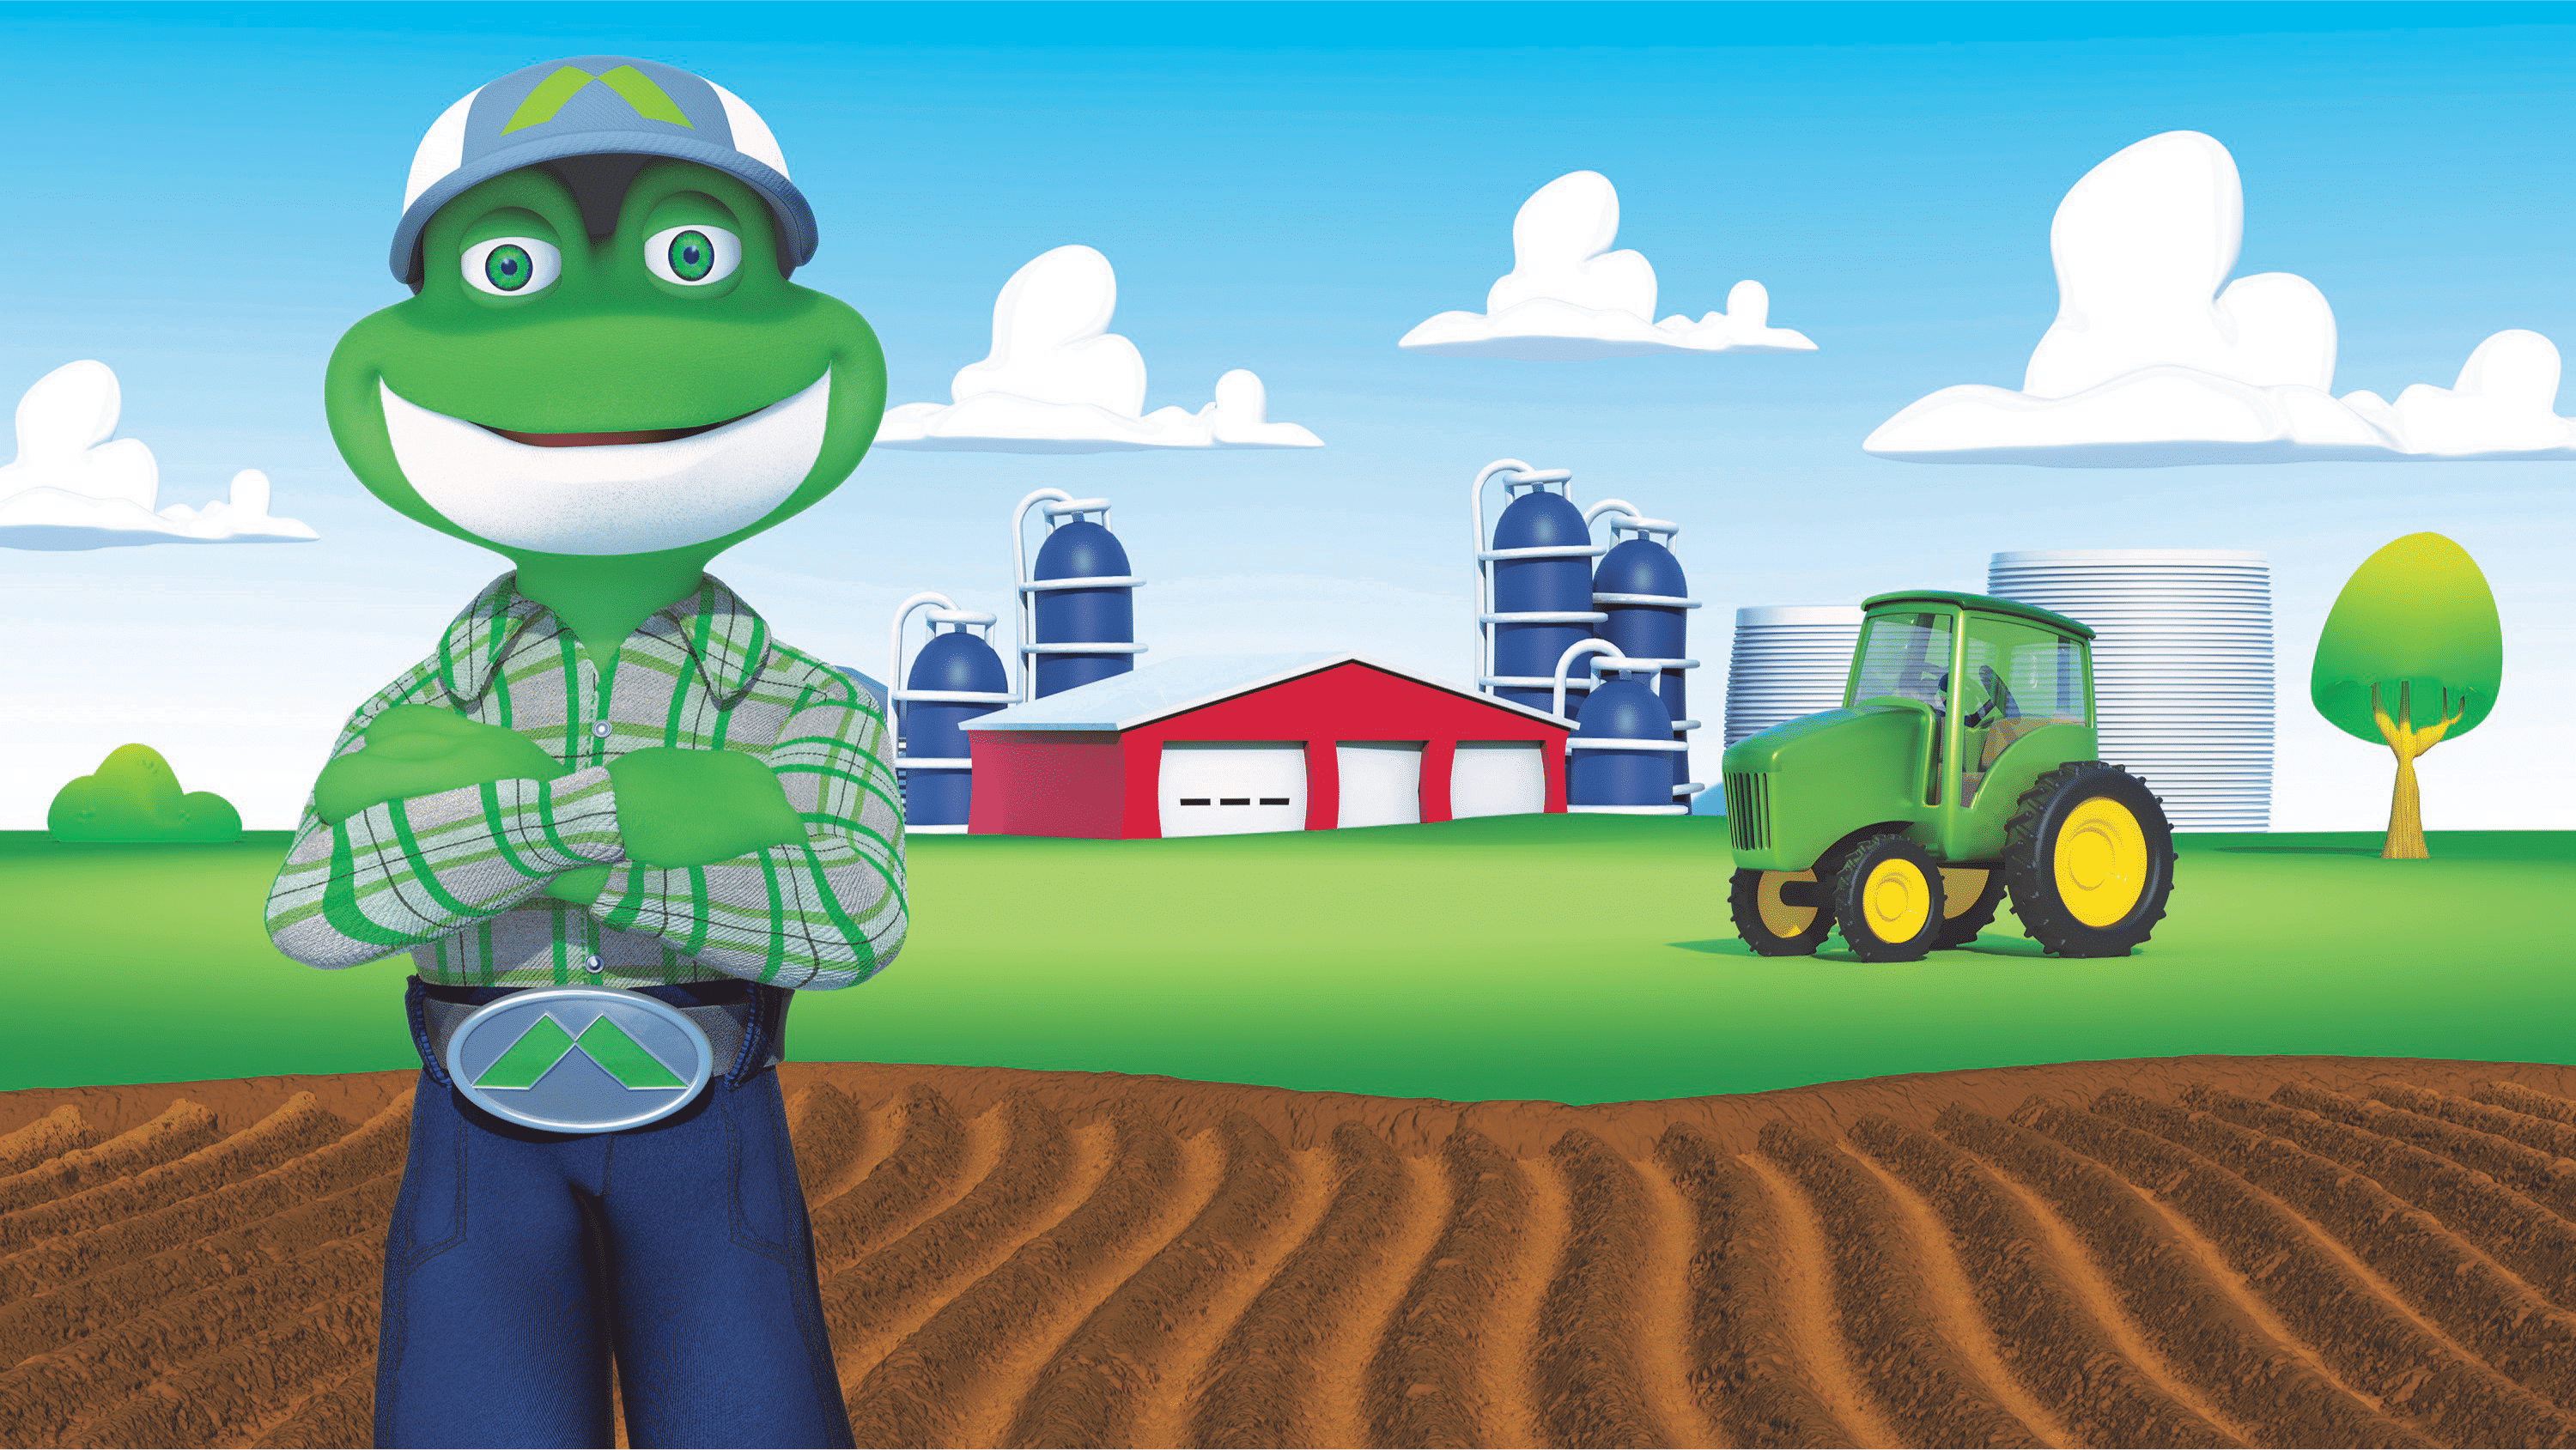 Farmer Hopper standing in a field